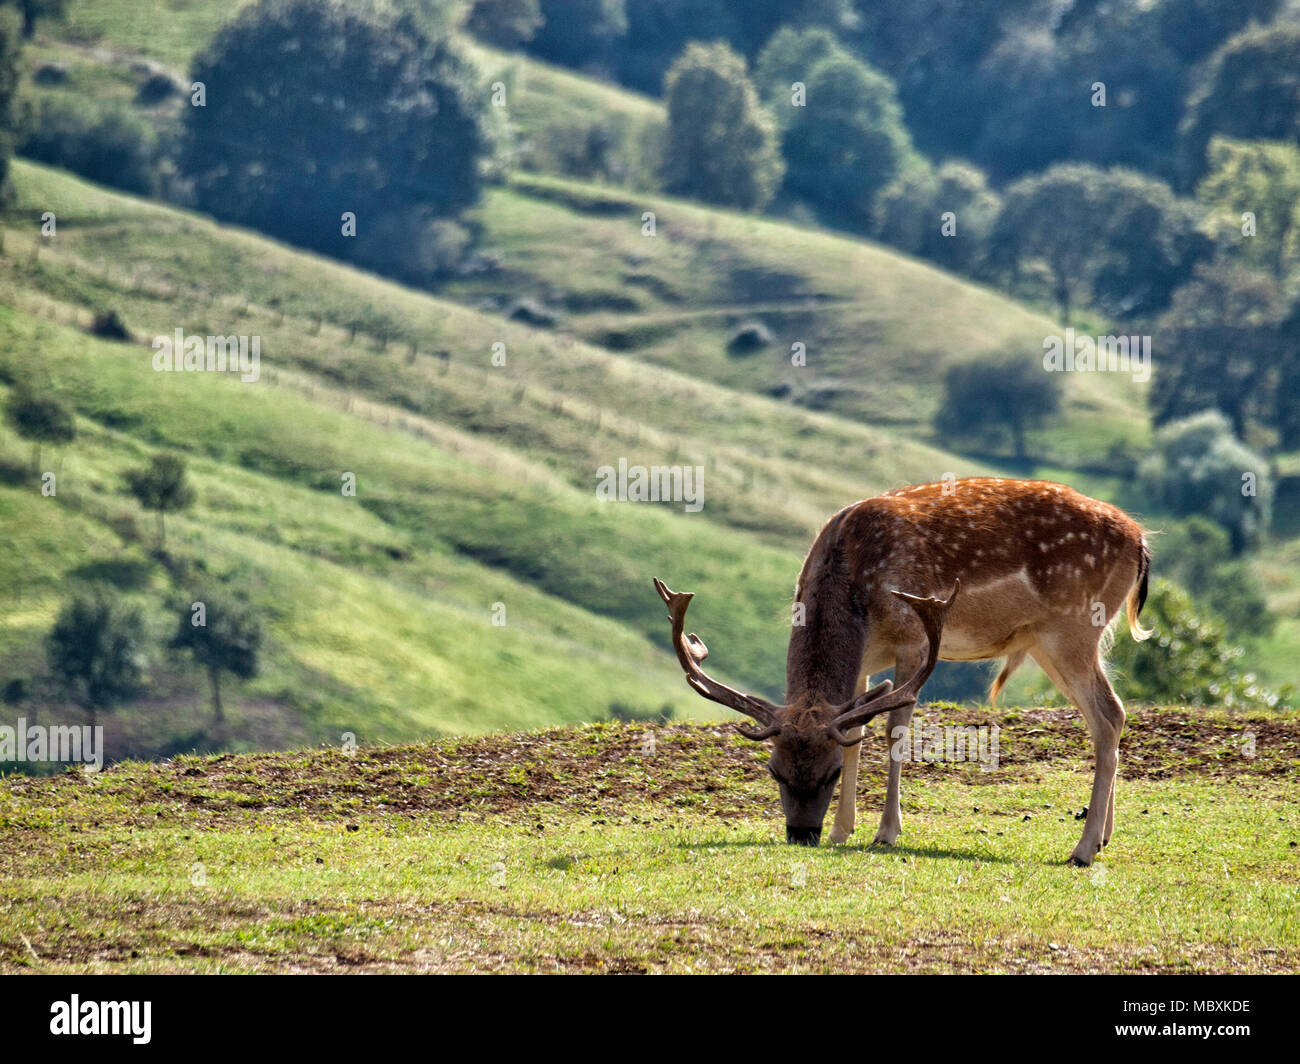 Deer in natural park Stock Photo